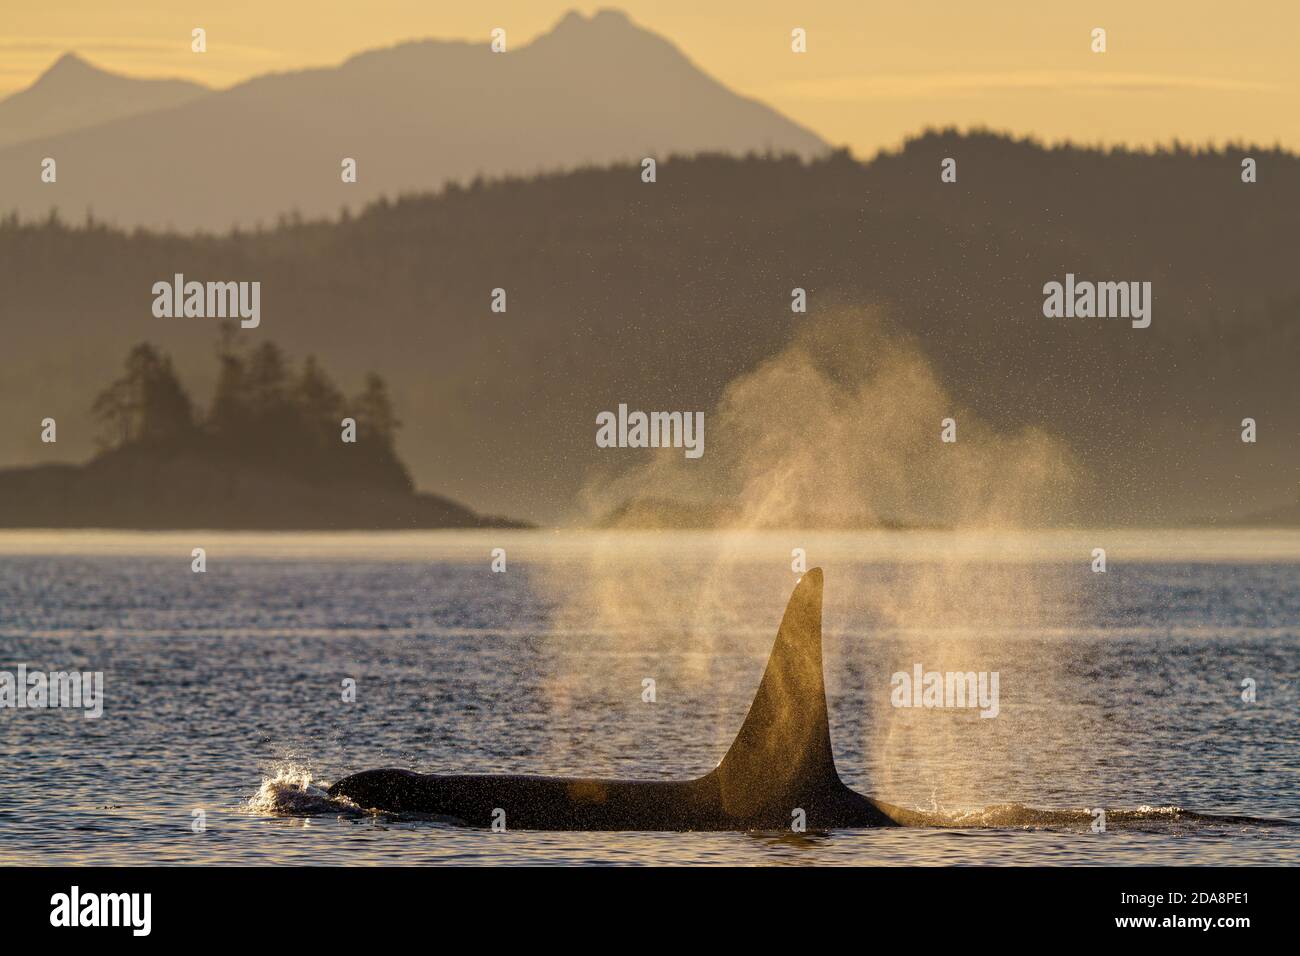 Épaulard mâle résidant dans le nord (Orca) au large de la côte de la Colombie-Britannique, Great Bear Rainforest, Colombie-Britannique, Canada Banque D'Images